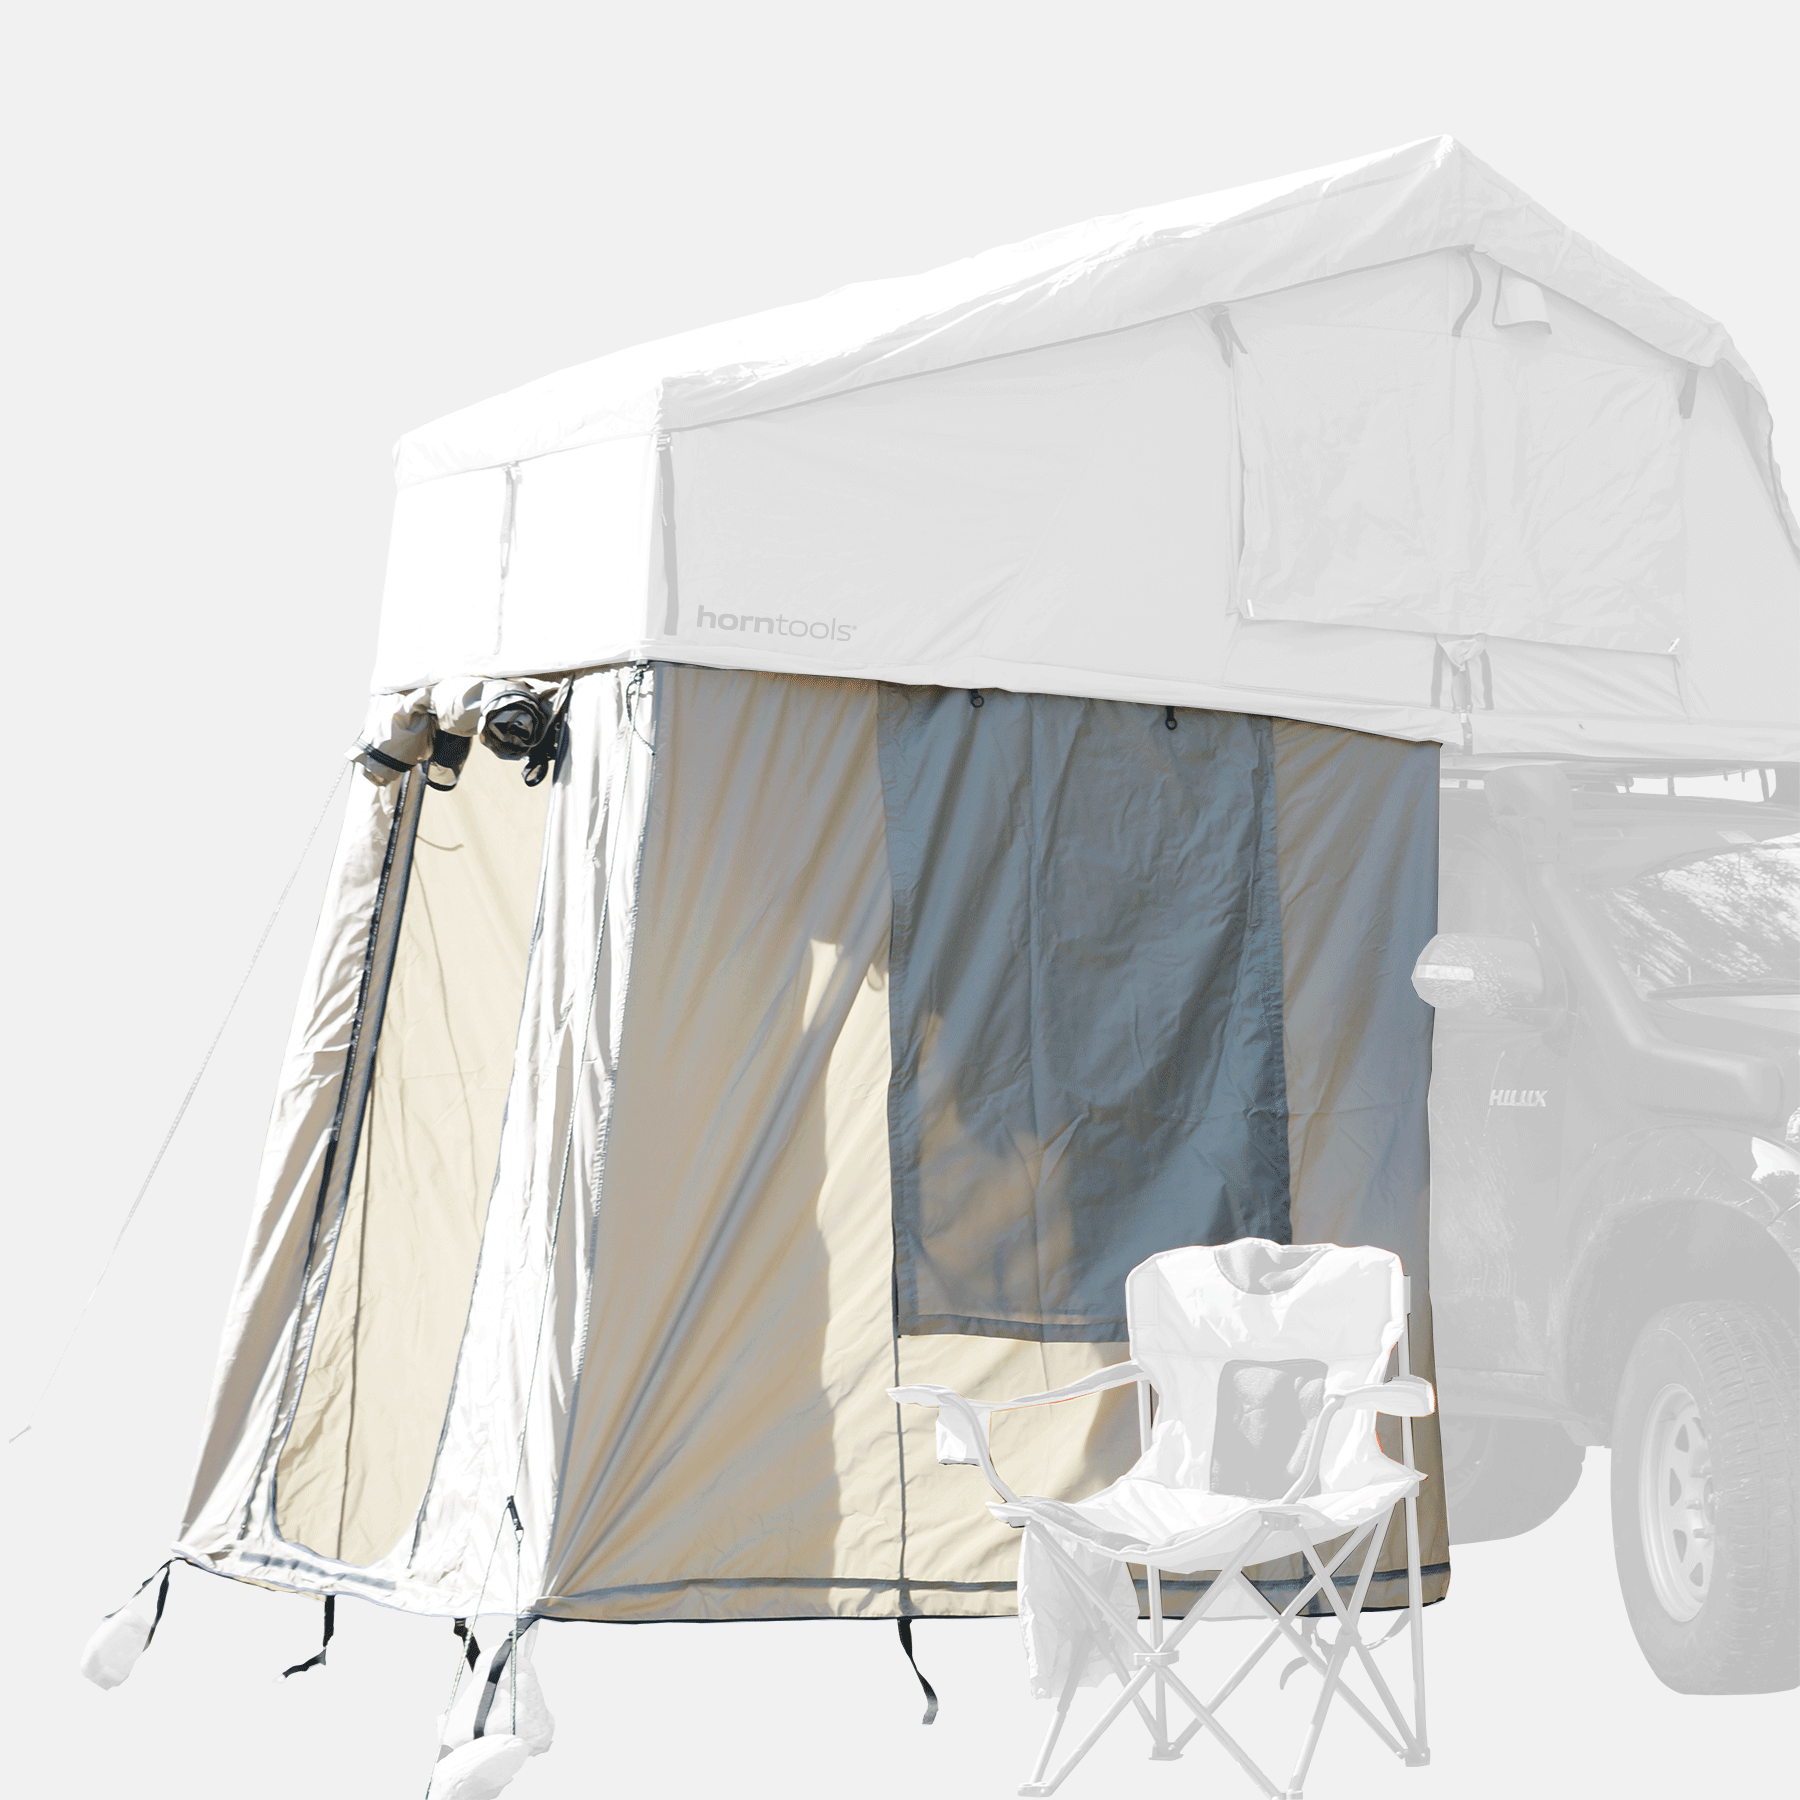 Annex room for roof tent Desert